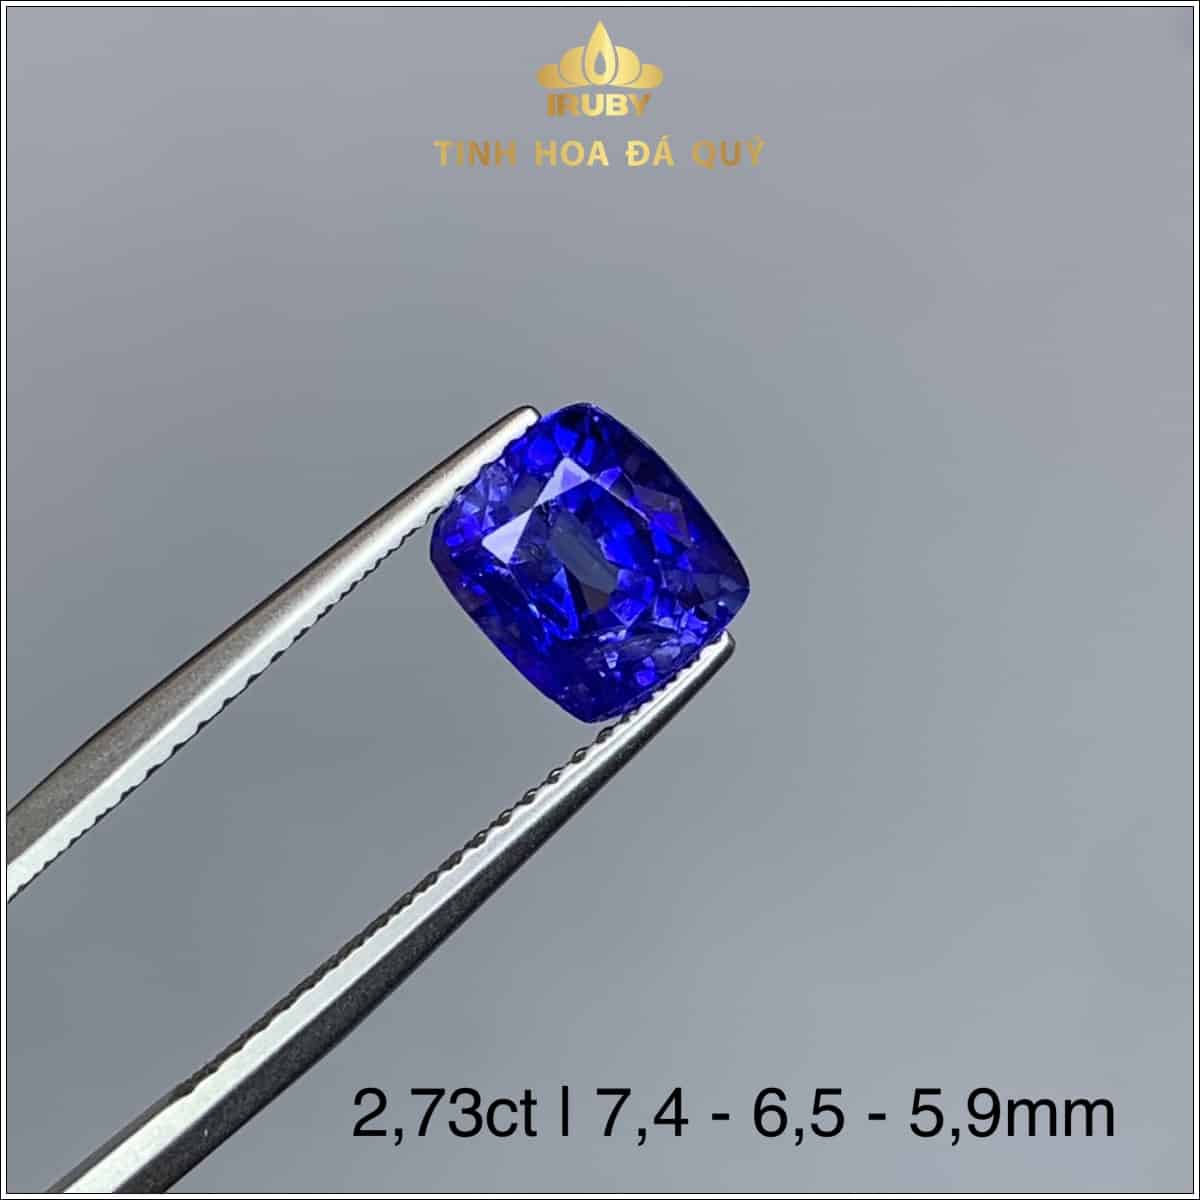 Viên Sapphire màu xanh lam hoàng gia 2,73ct - IRSP 236273 hình ảnh